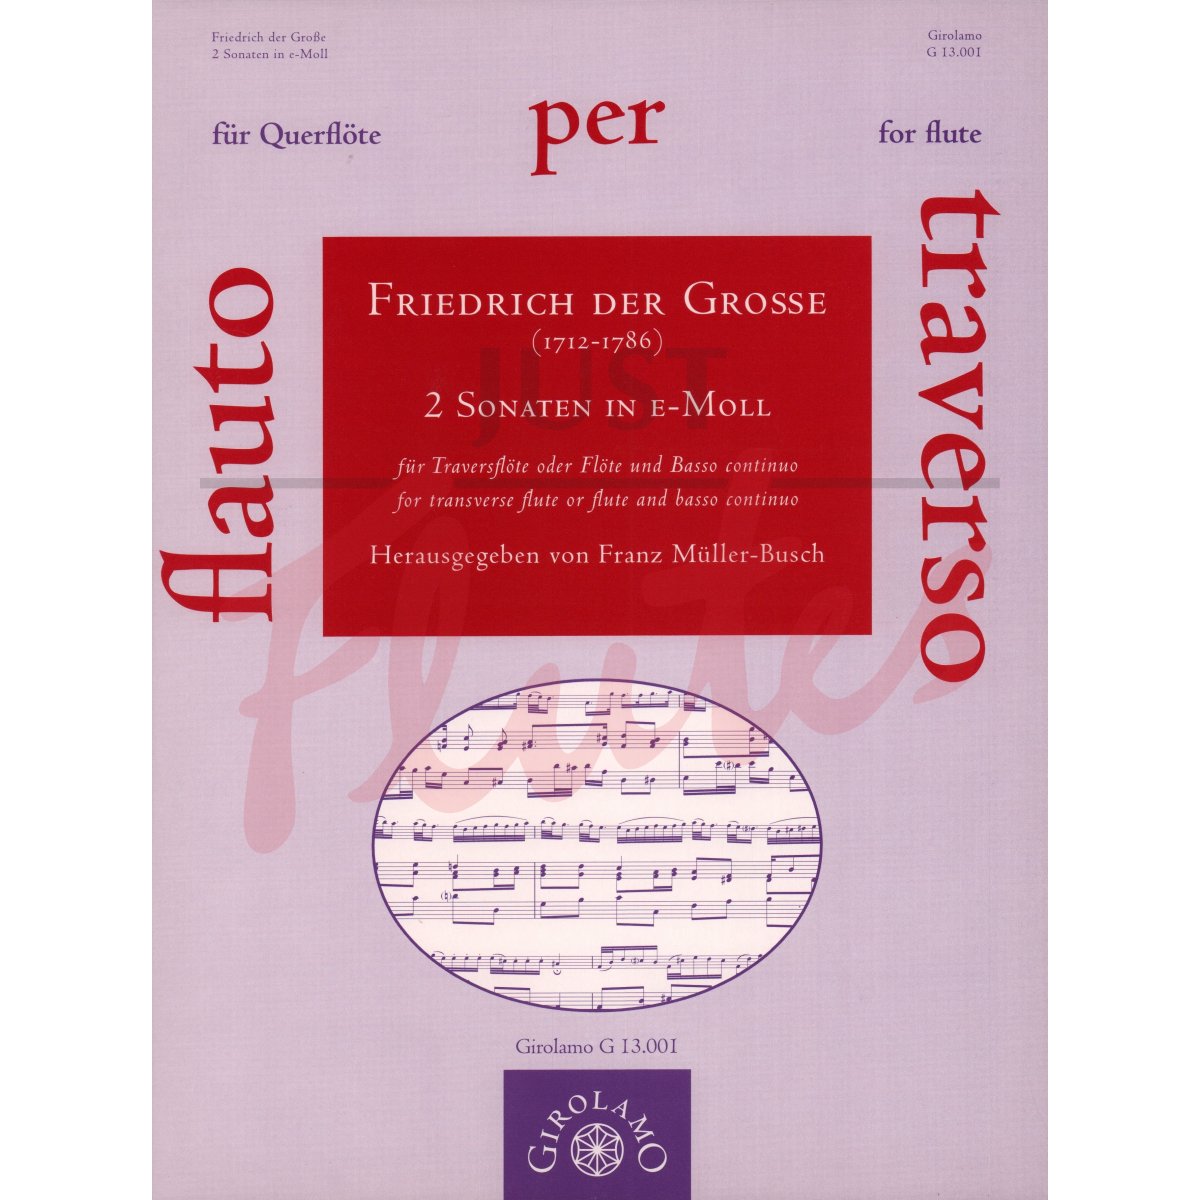 2 Sonatas in E minor for Flute and Basso Continuo